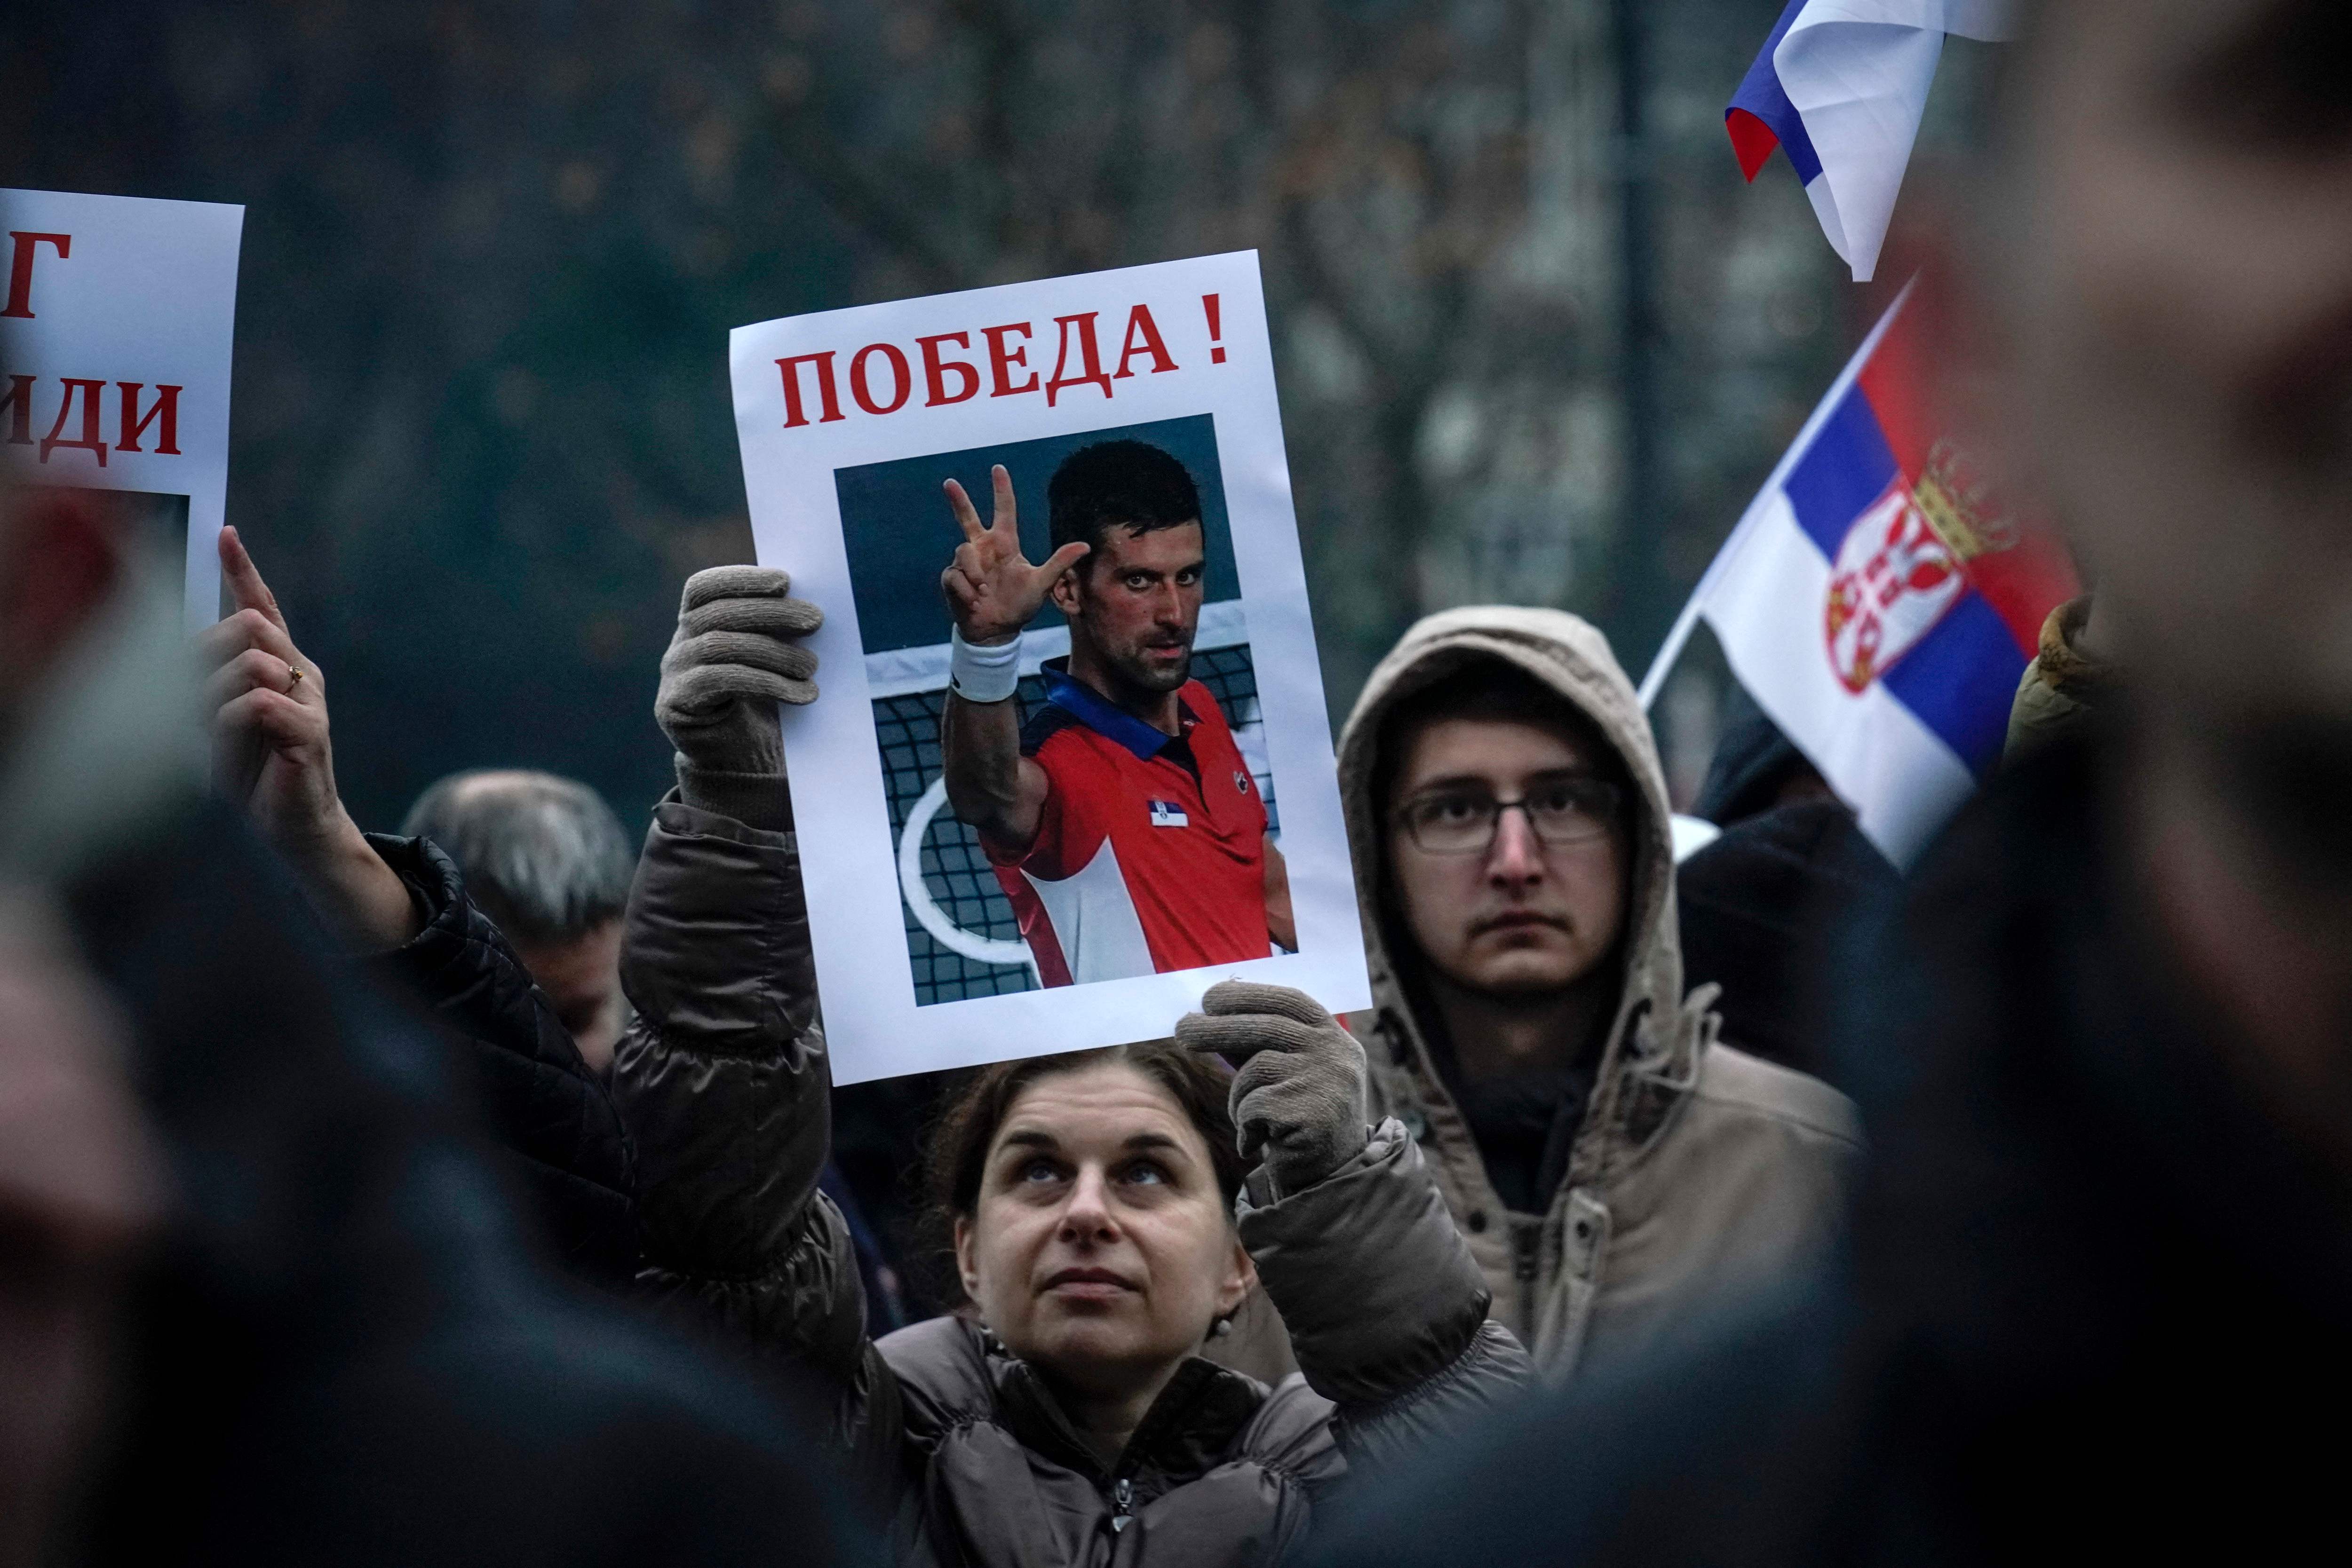 Una mujer sostiene una imagen de Novak Djokovic que dice "¡Victoria!", durante una concentración frente a la Asamblea Nacional de Serbia, en Belgrado. (Foto Prensa Libre: AFP)